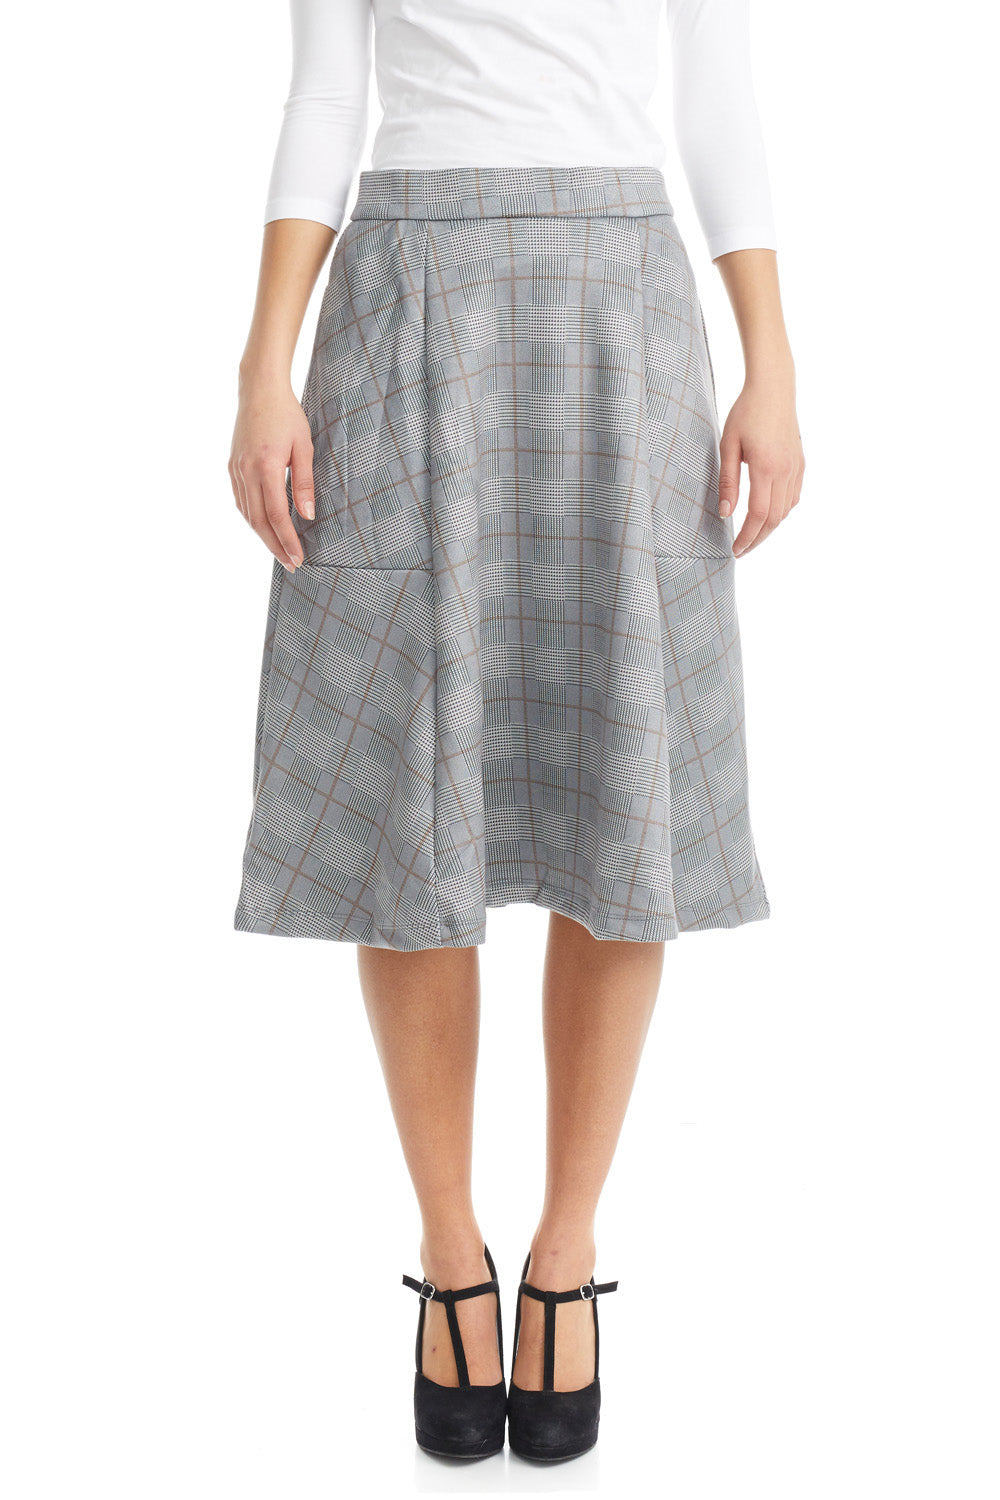 ESTEEZ AUSTIN Skirt - Dressy Ponte A-Line Skirt for WOMEN